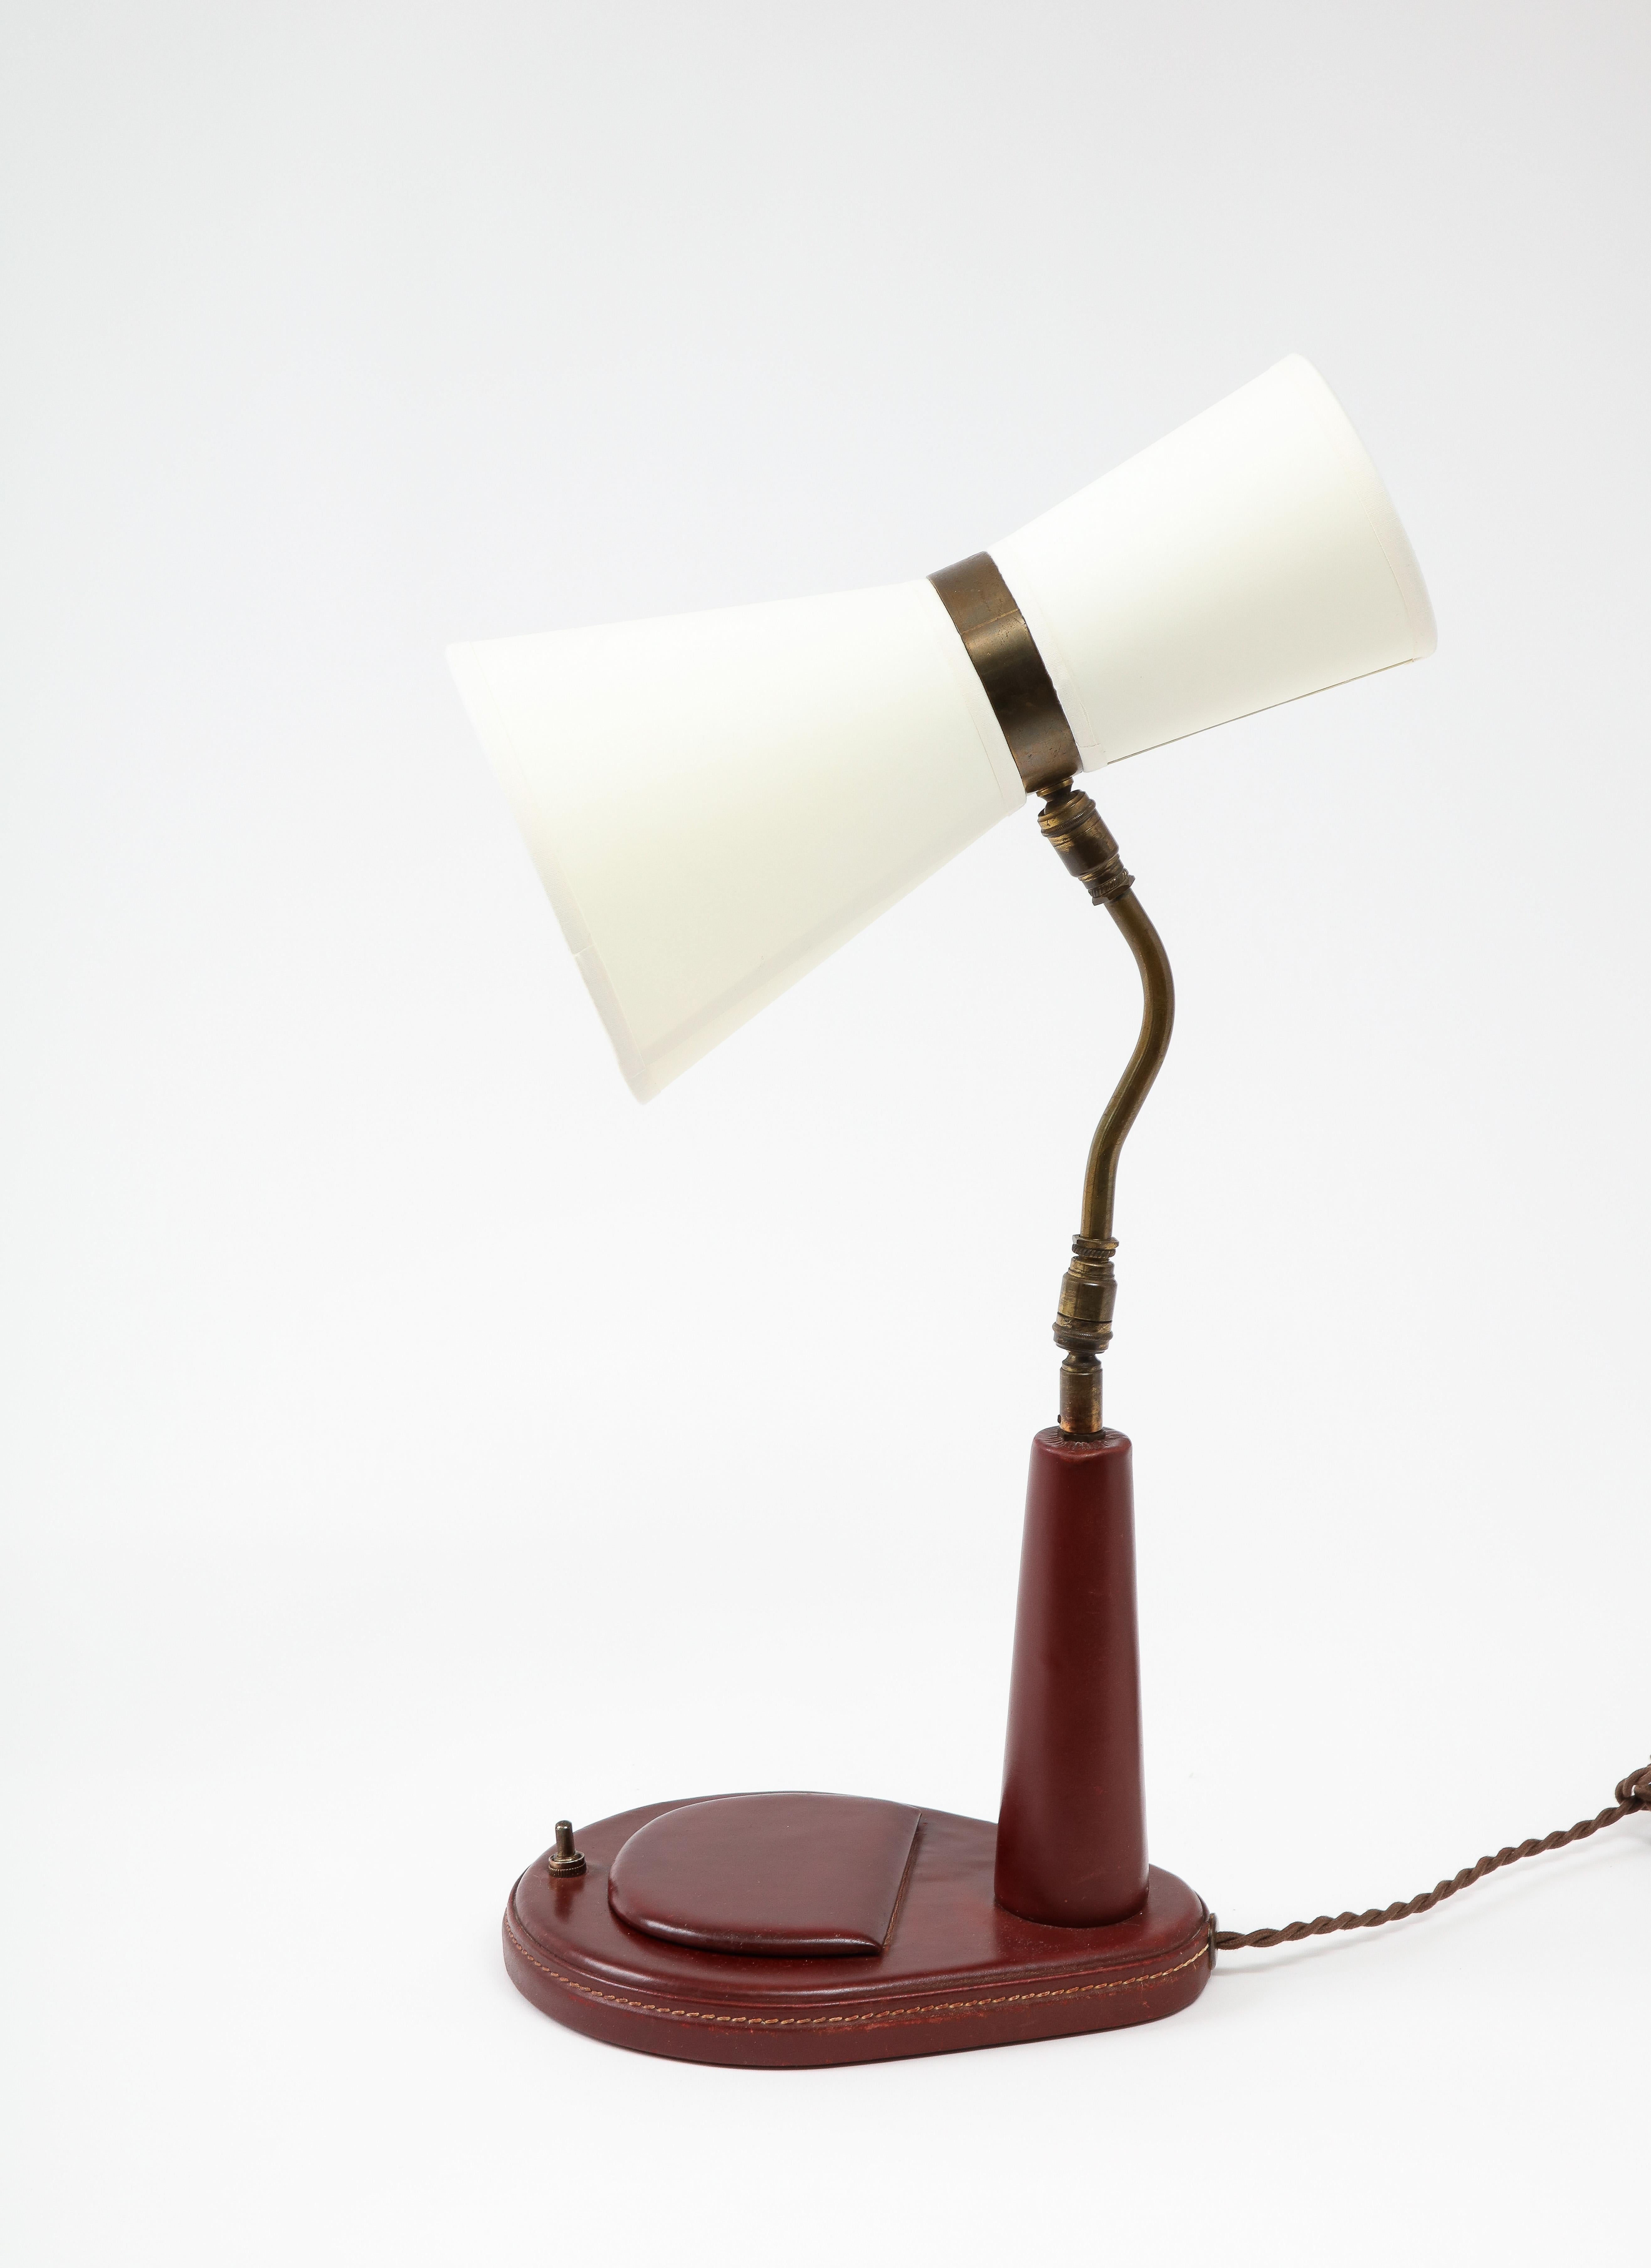 Lancel Burgundy Leather Desk Lamp after Adnet, France 1960's For Sale 3